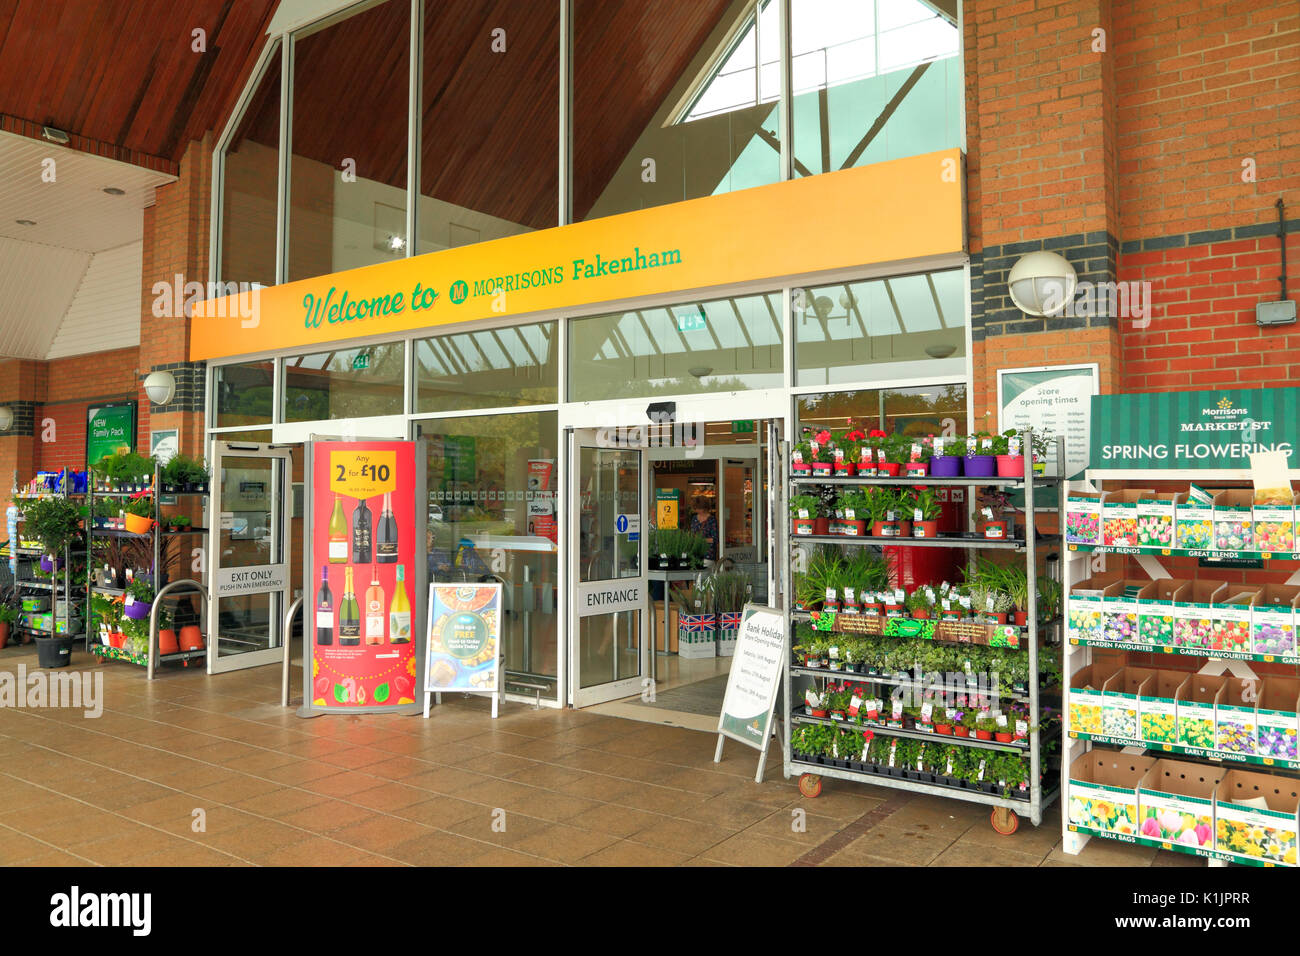 Morrisons Supermarkt, Eingang, Foyer, Fakenham, Norfolk, England, UK, englischen Supermärkten, speichern, speichert Stockfoto